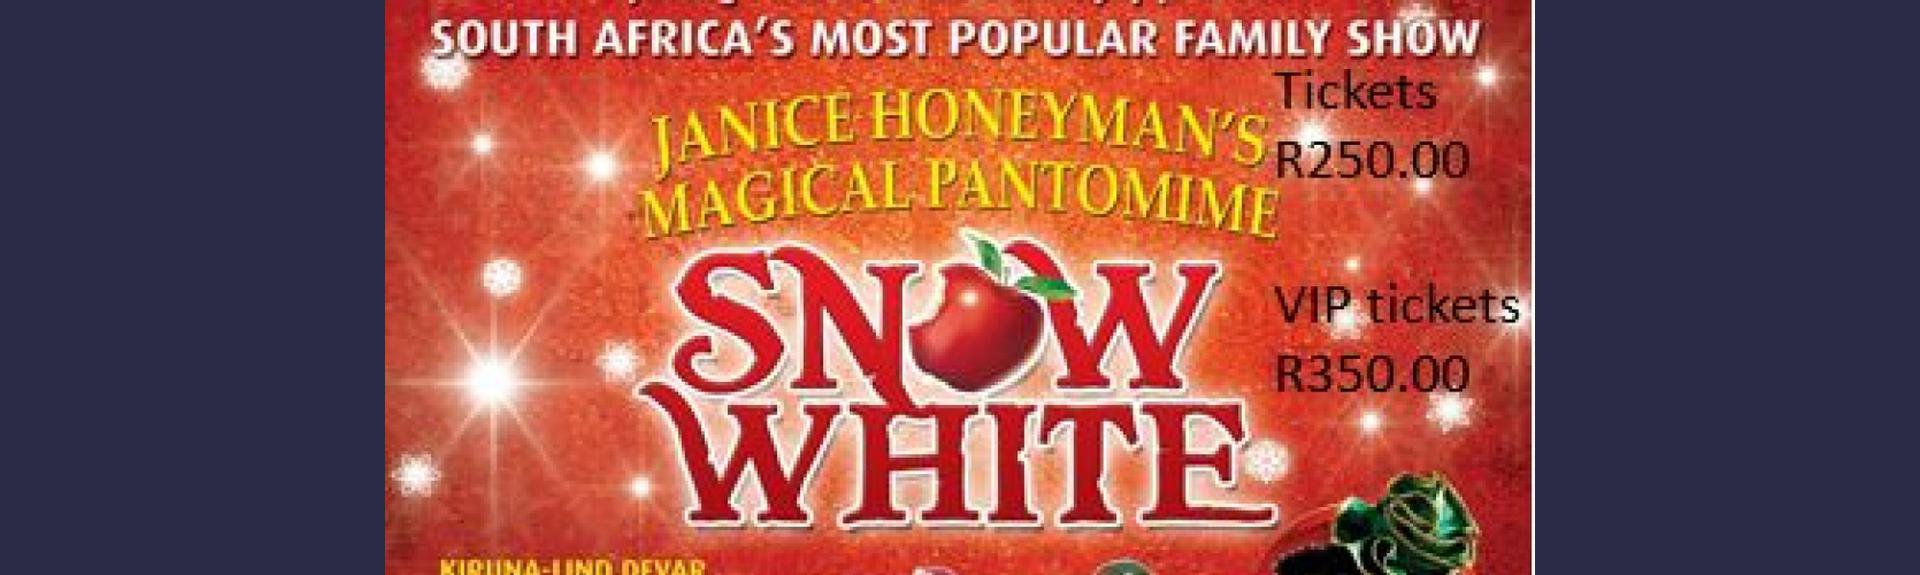 Snow White Pantomime - Joburg Theatre